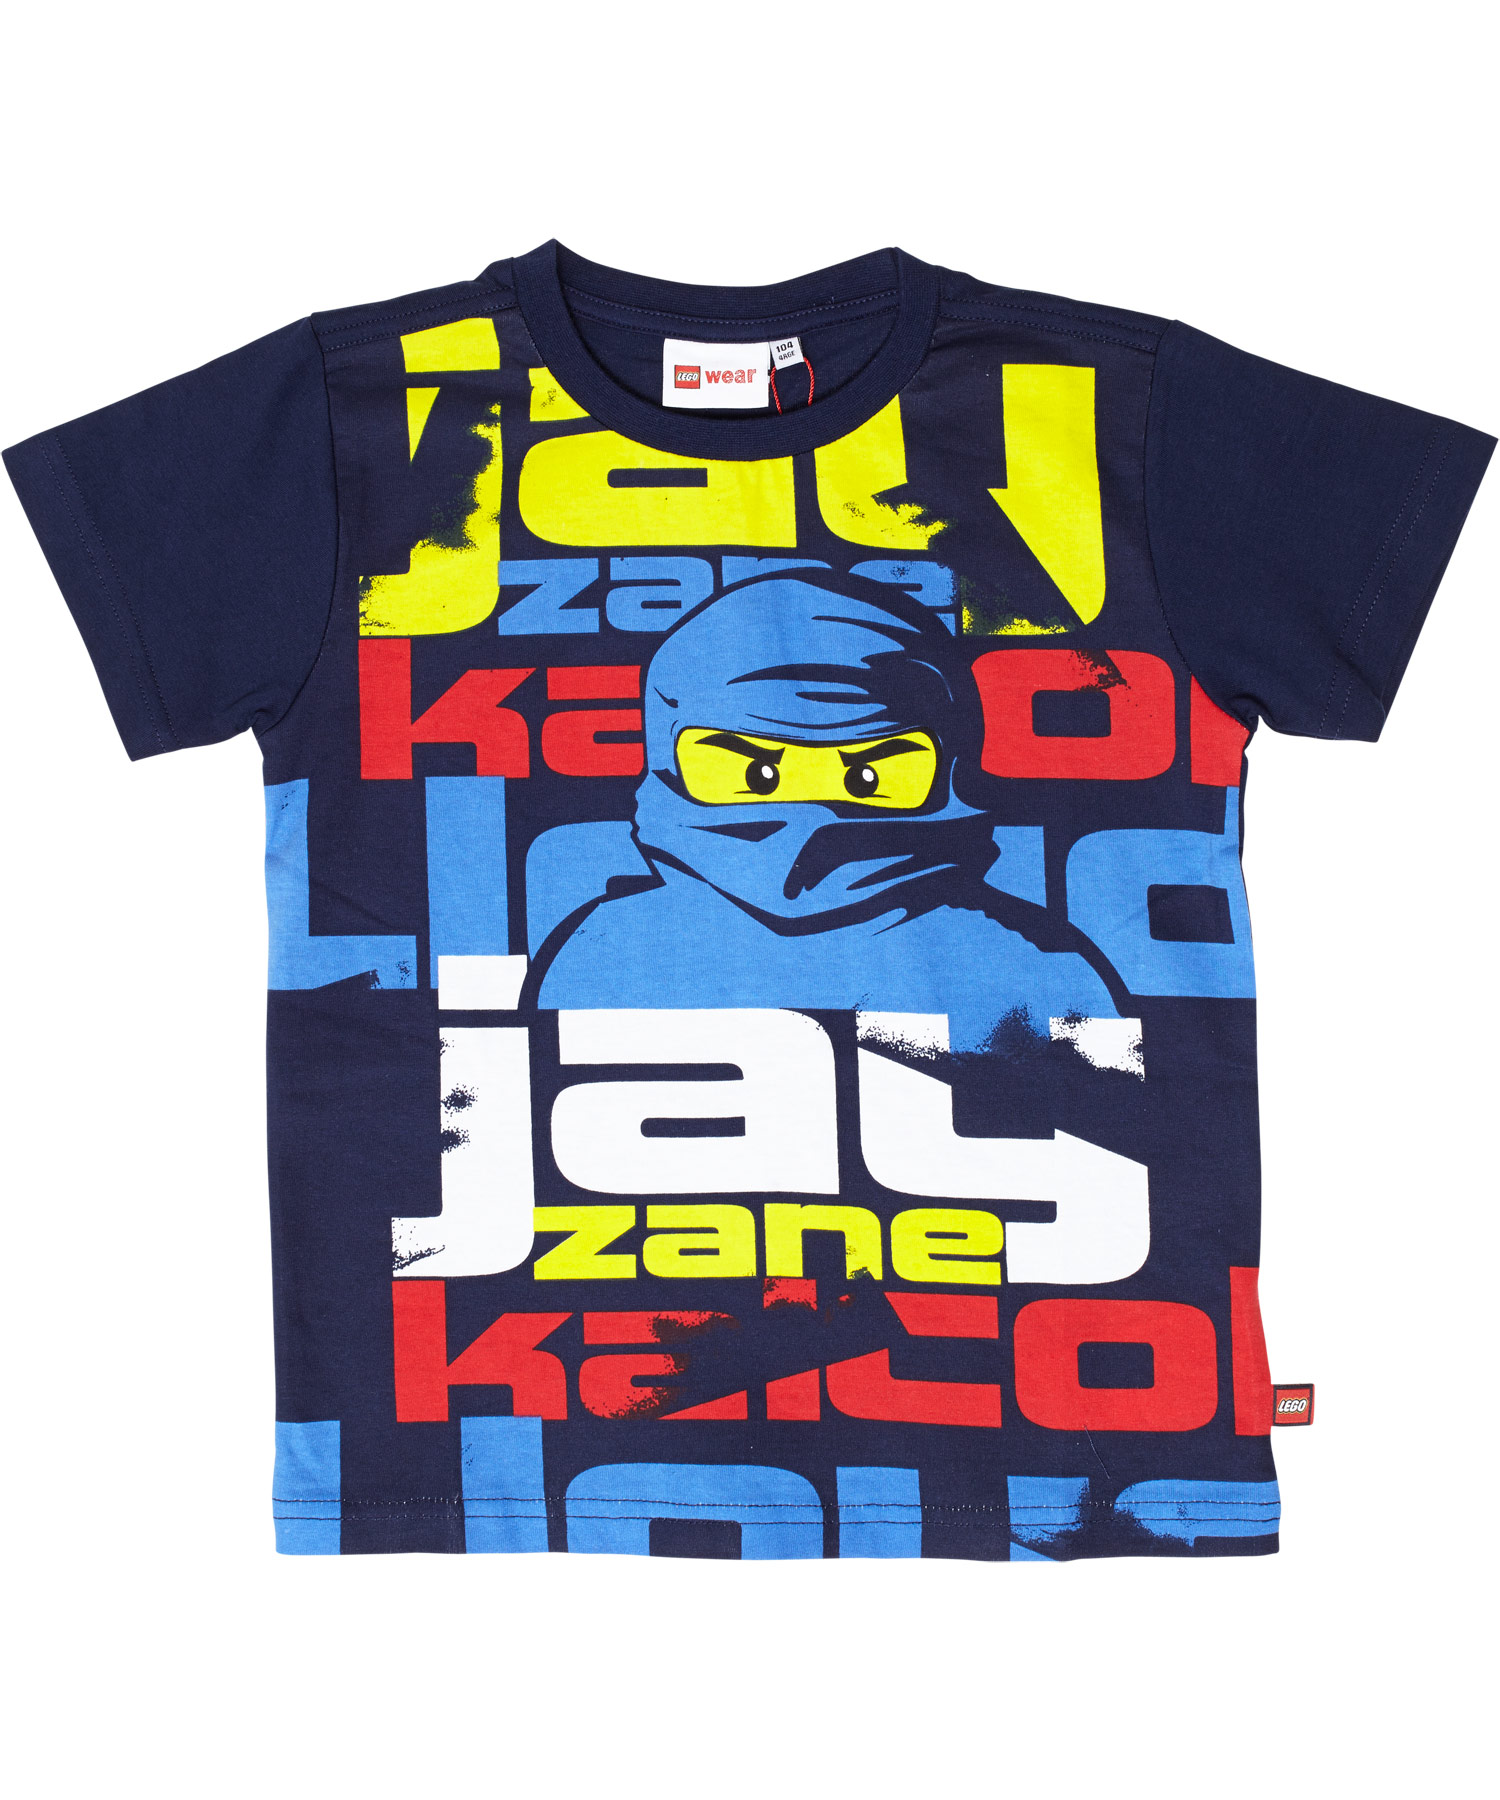 New! LEGO navy Ninjago blue the t-shirt with ninja Jay